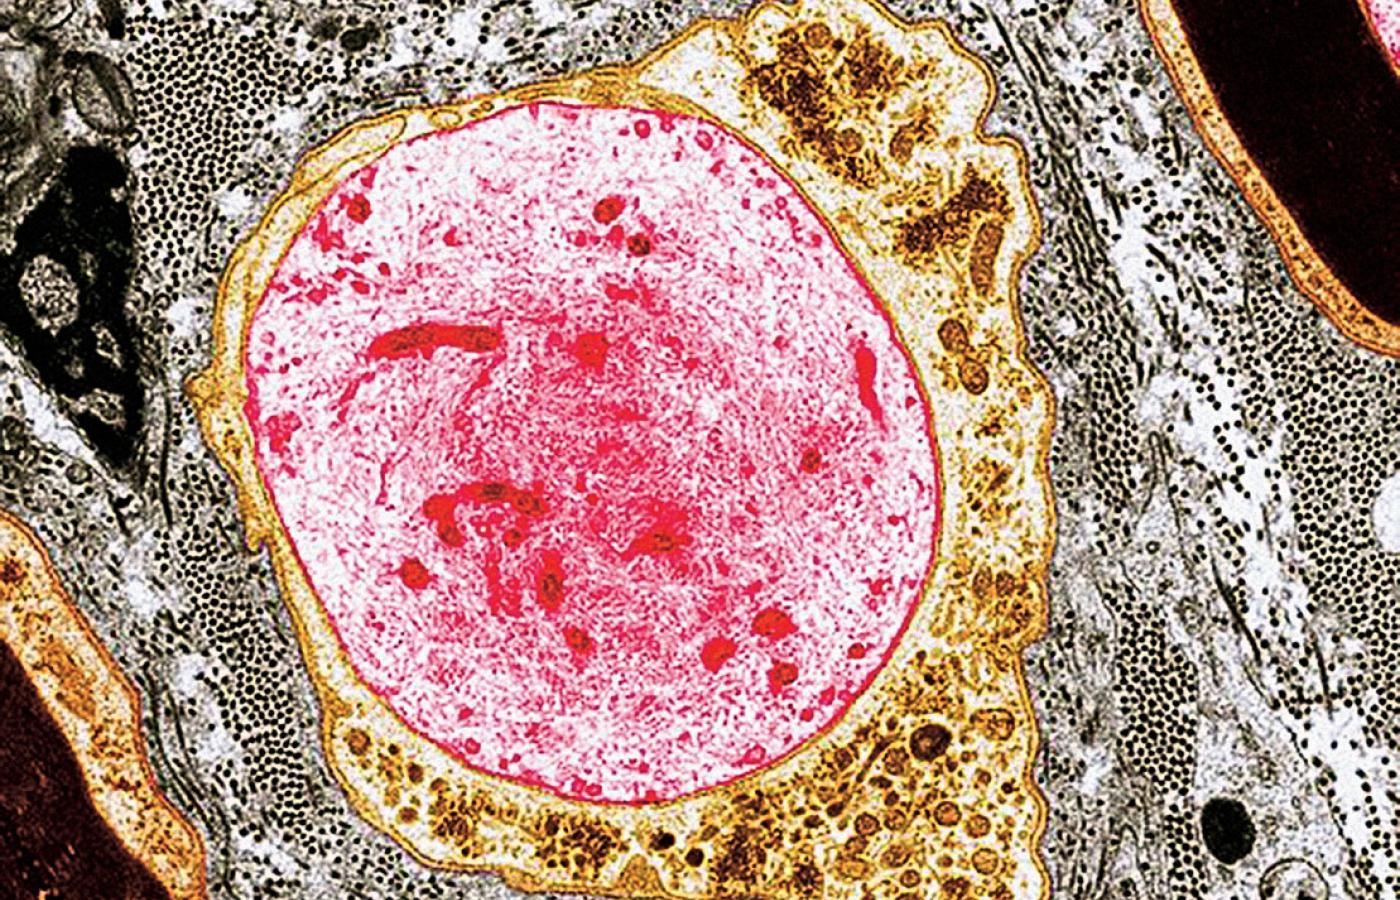 Obraz zniszczenia, czyli komórka nerwowa pozbawiona osłonki mielinowej na zdjęciu wykonanym za pomocą transmisyjnego mikroskopu elektronowego.